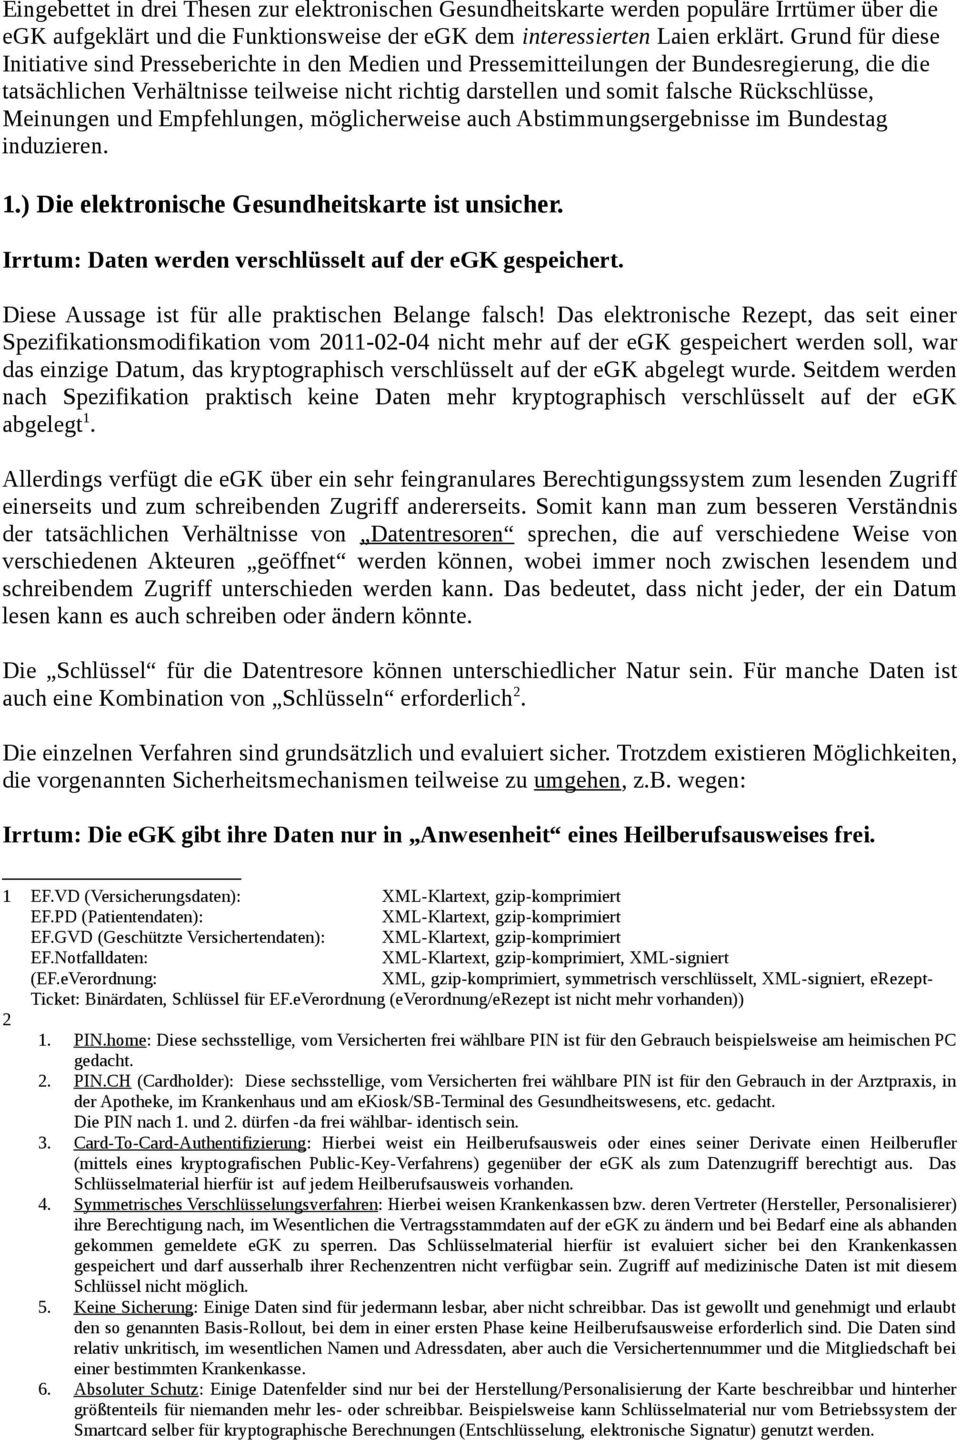 Rückschlüsse, Meinungen und Empfehlungen, möglicherweise auch Abstimmungsergebnisse im Bundestag induzieren. 1.) Die elektronische Gesundheitskarte ist unsicher.